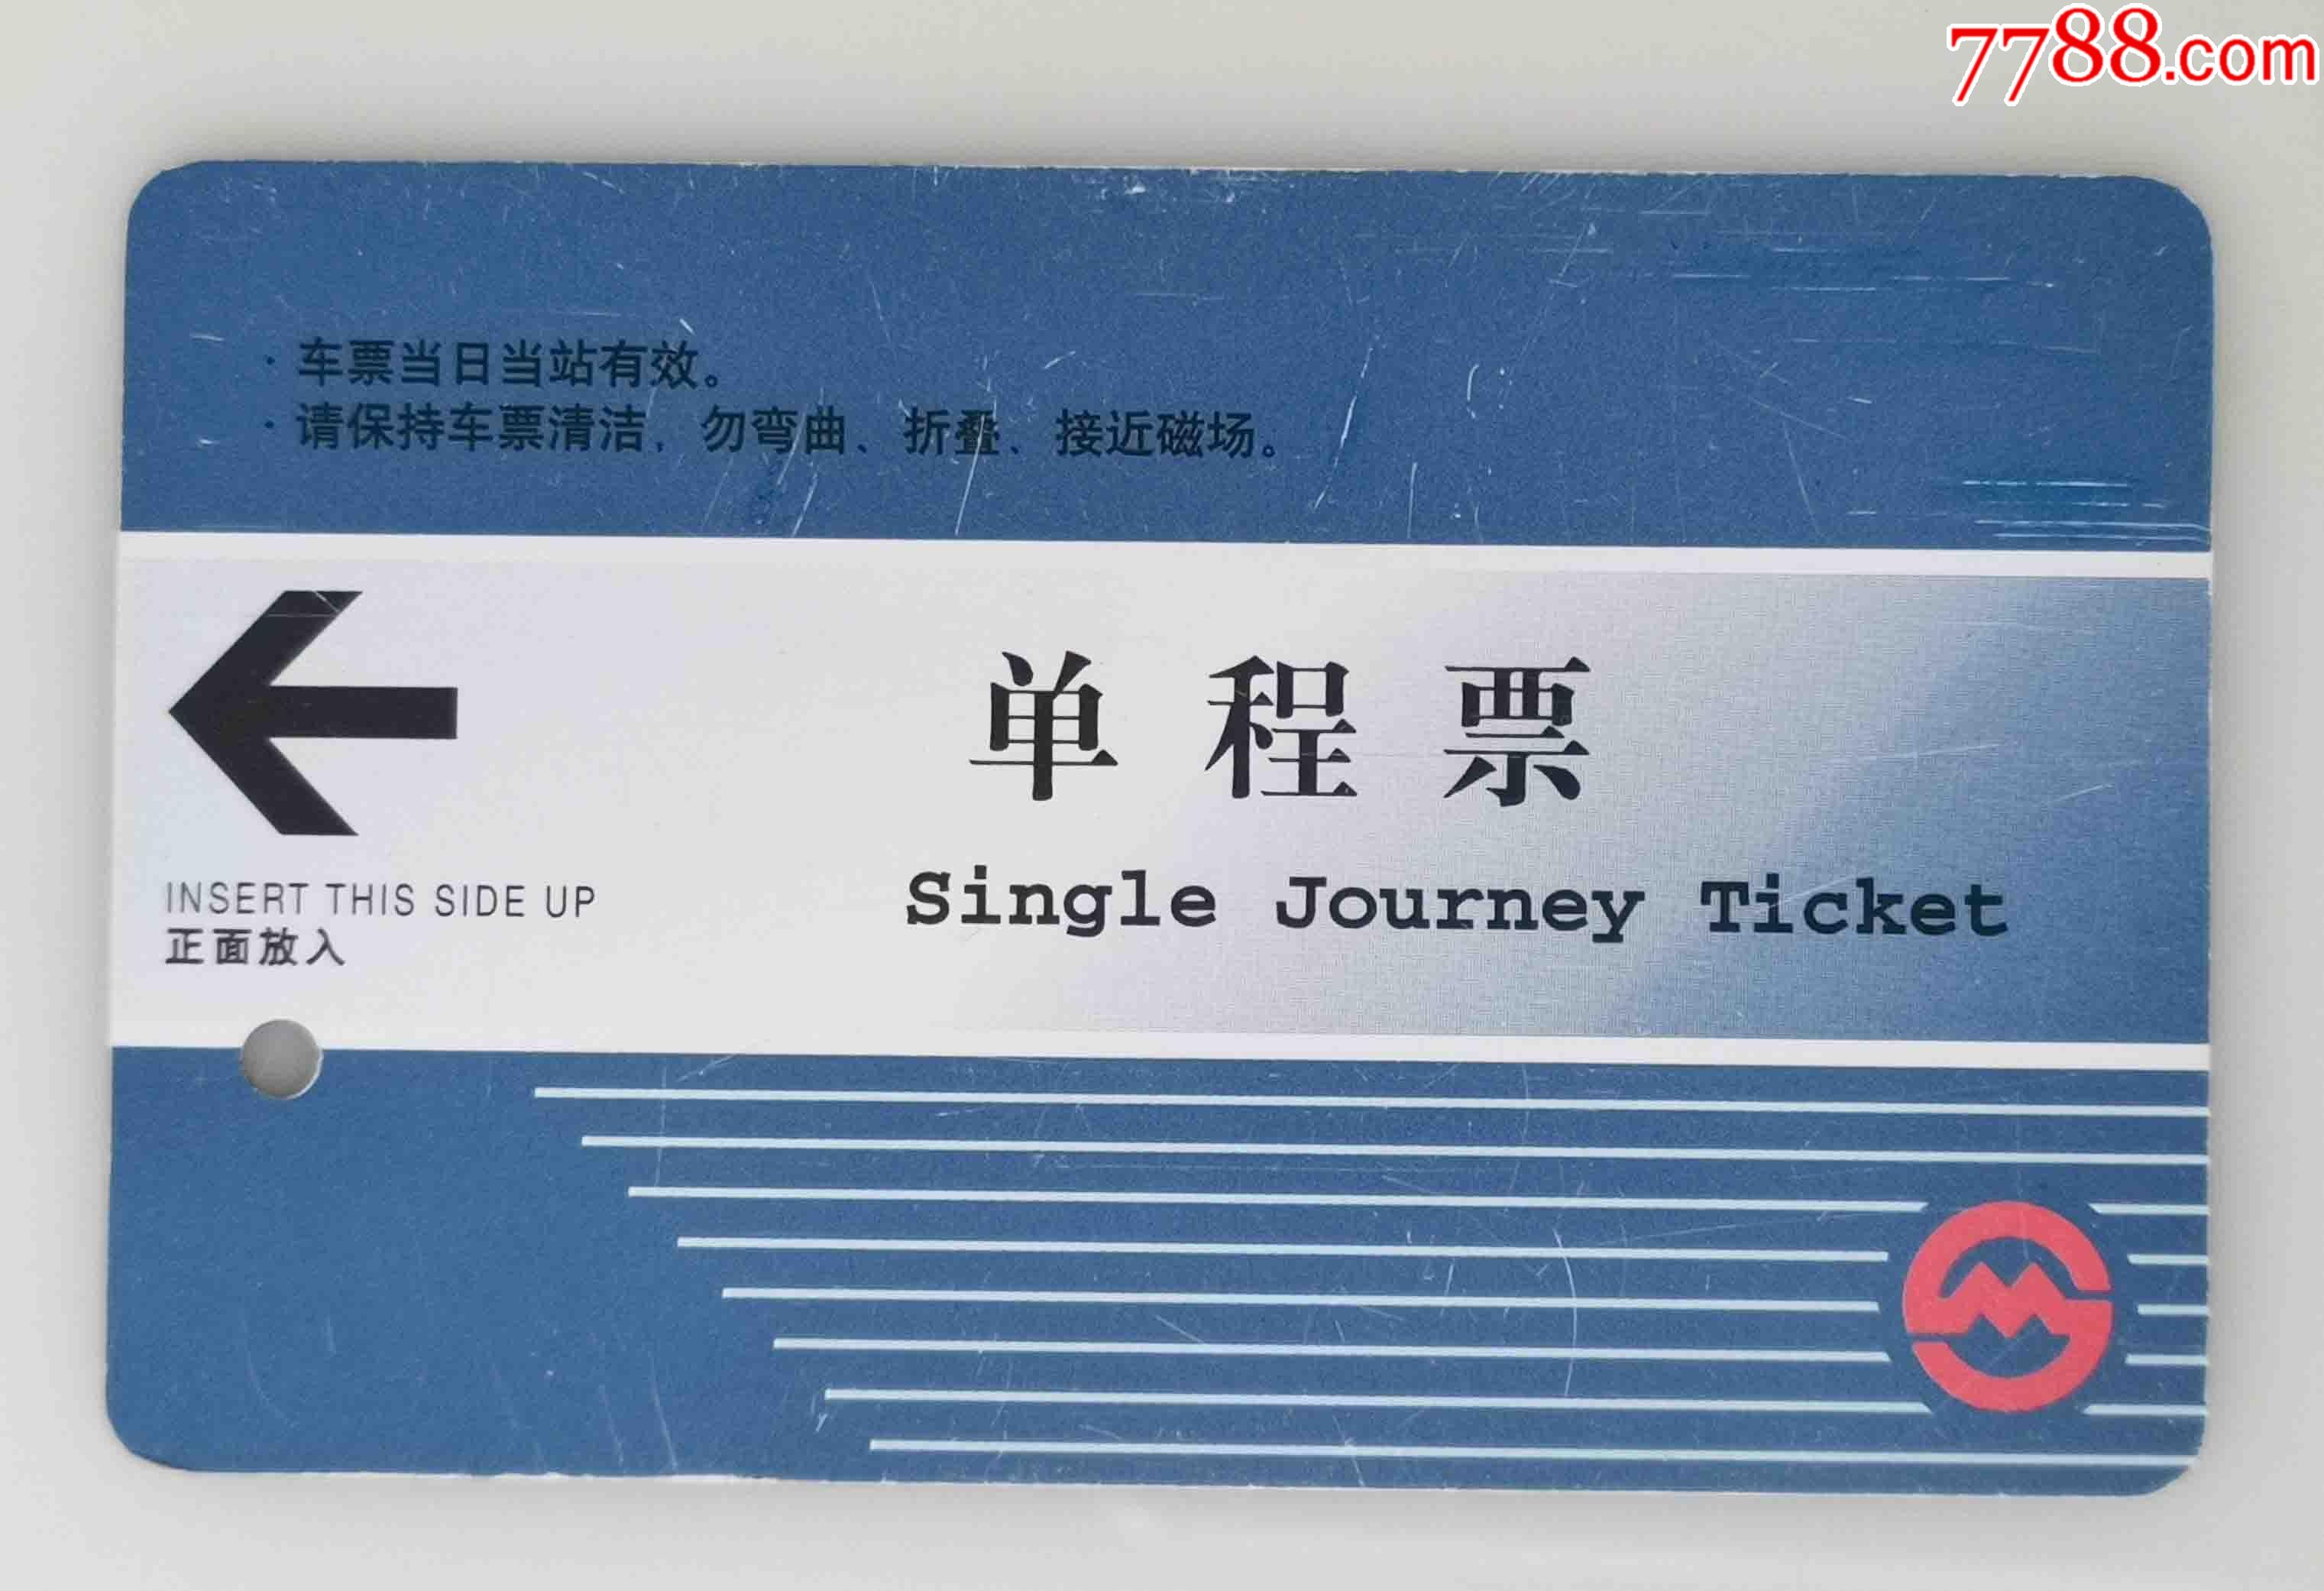 上海地铁单程票——迎apec会议